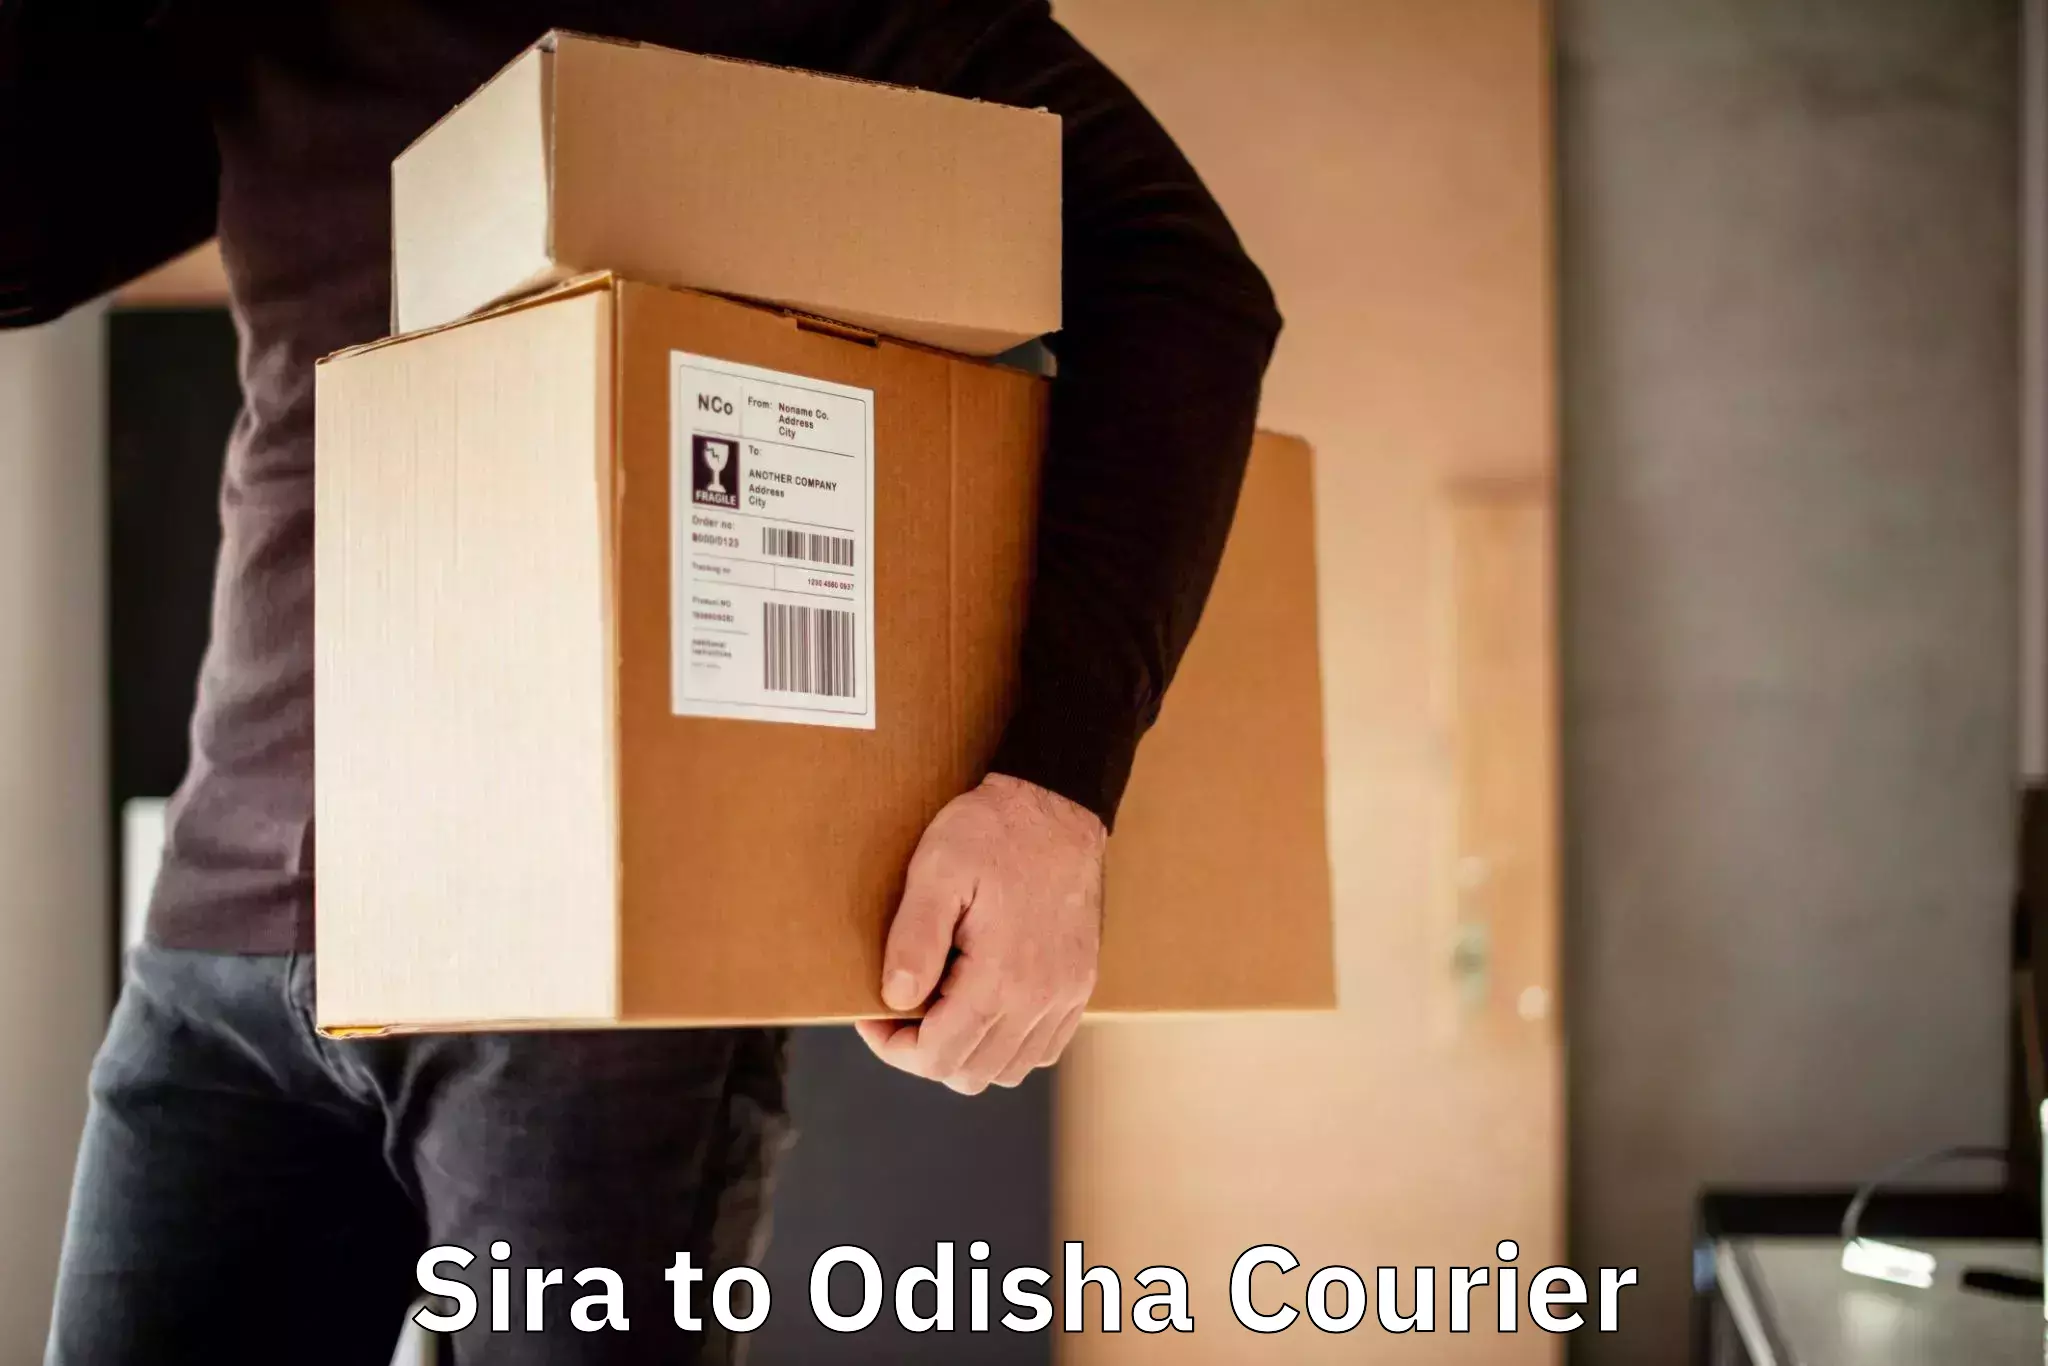 Urban courier service Sira to Odisha